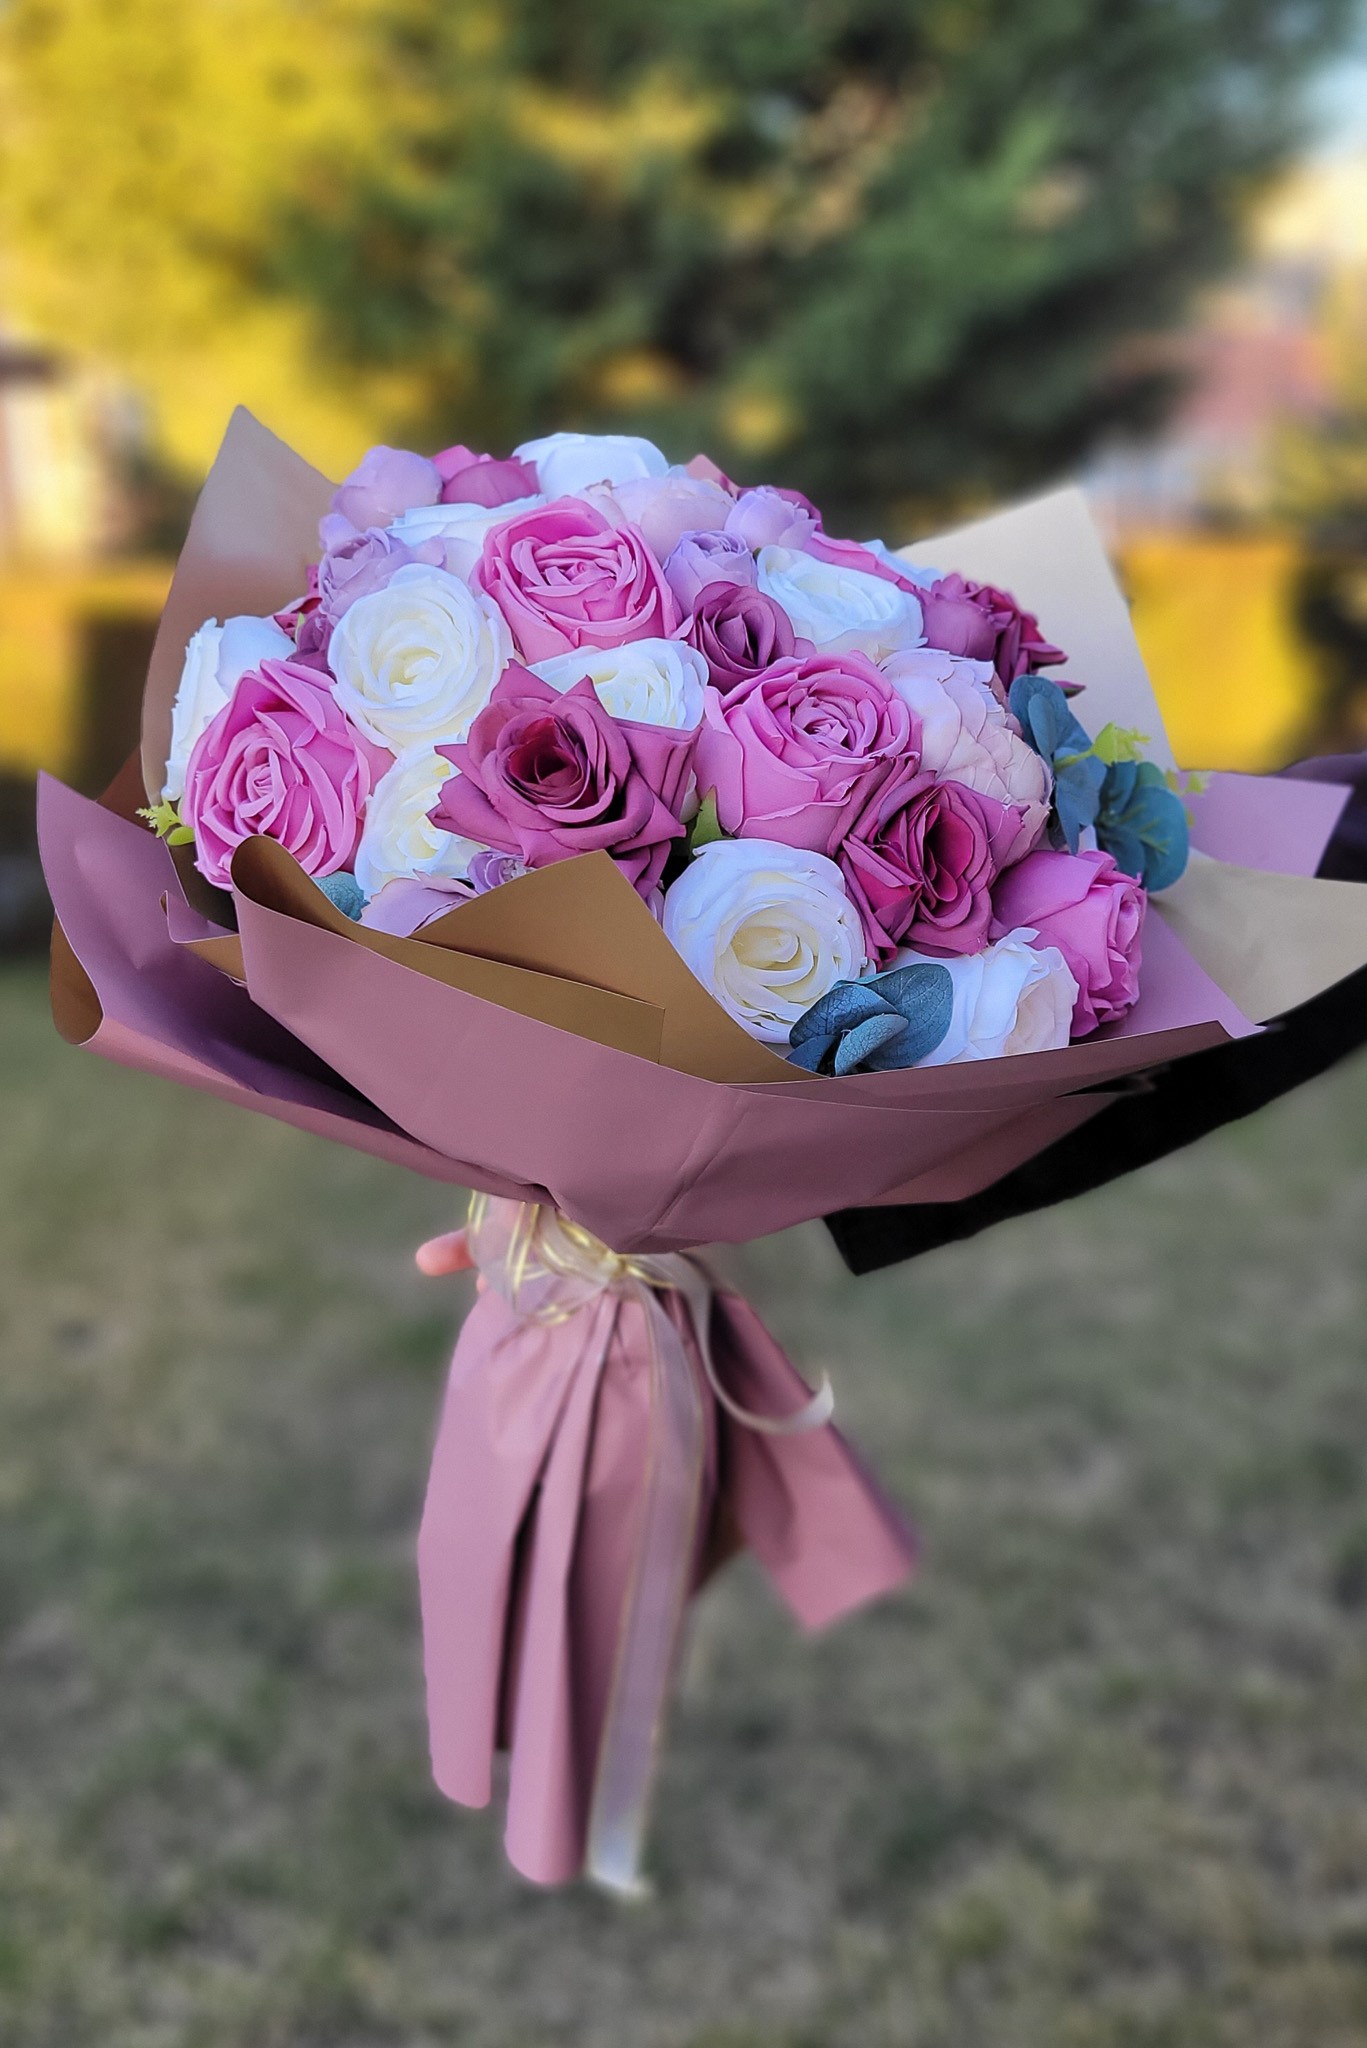 Kız İsteme Söz El Çiçeği Buketi ve Nişan Çikolatası - Mor Lila Pembe Renk